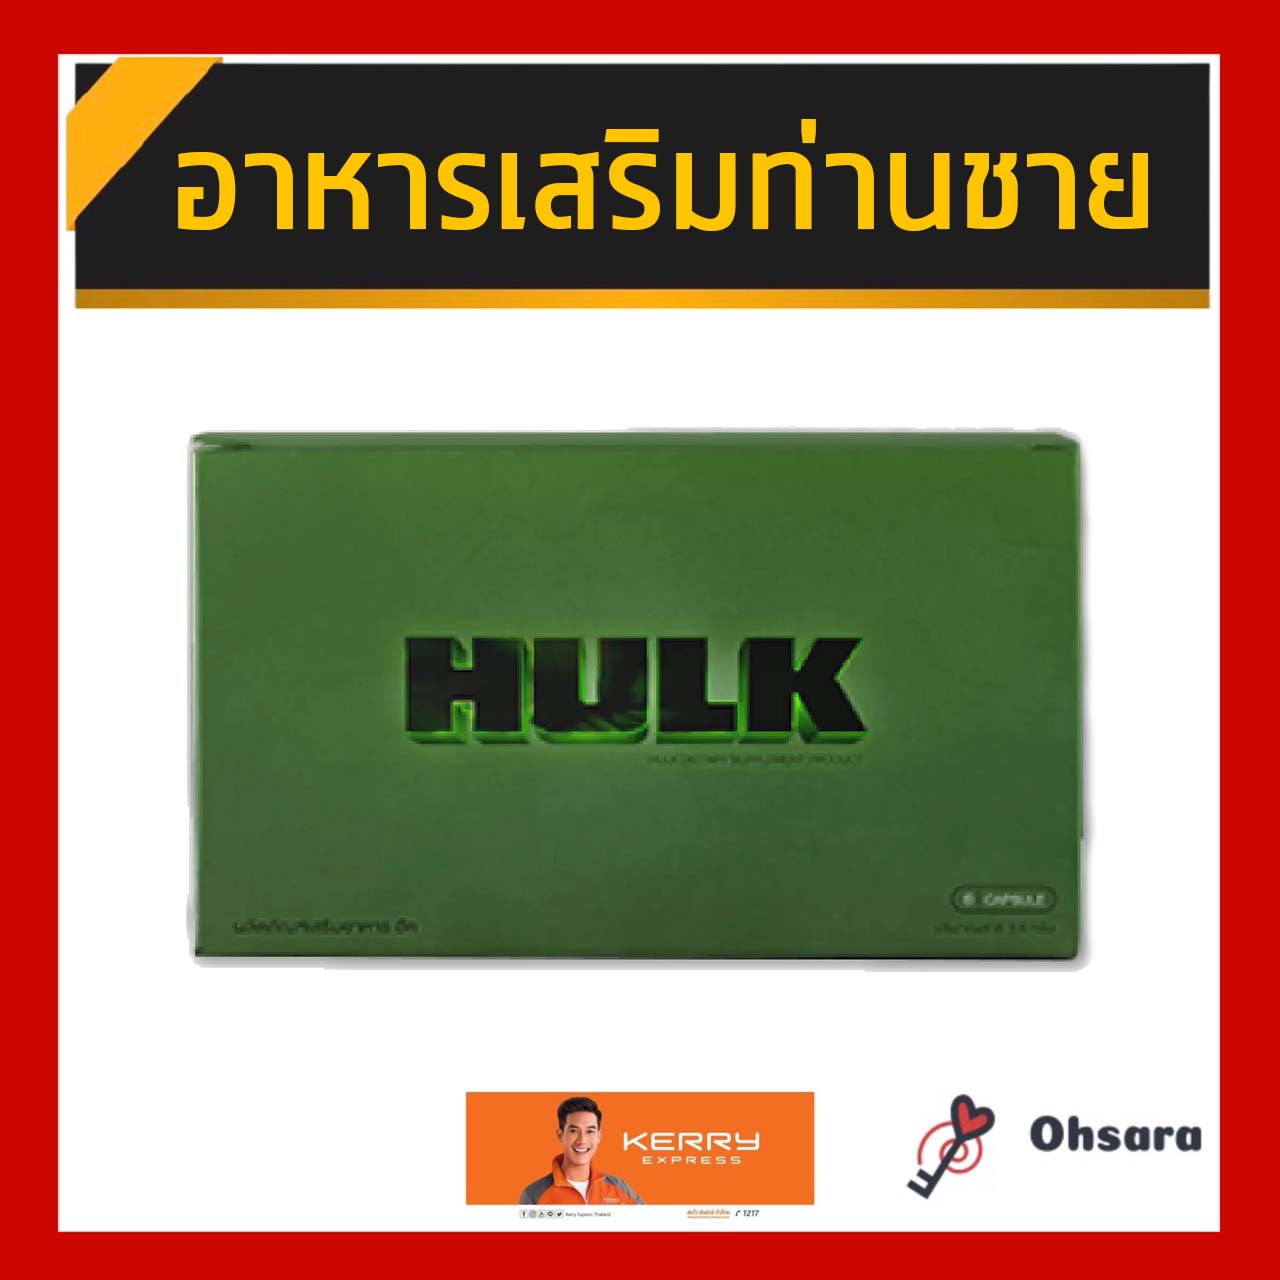 Hulk ฮัค ผลิตภัณฑ์เสริมอาหาร สำหรับท่านชาย (1 กล่อง 6 แคปซูล)